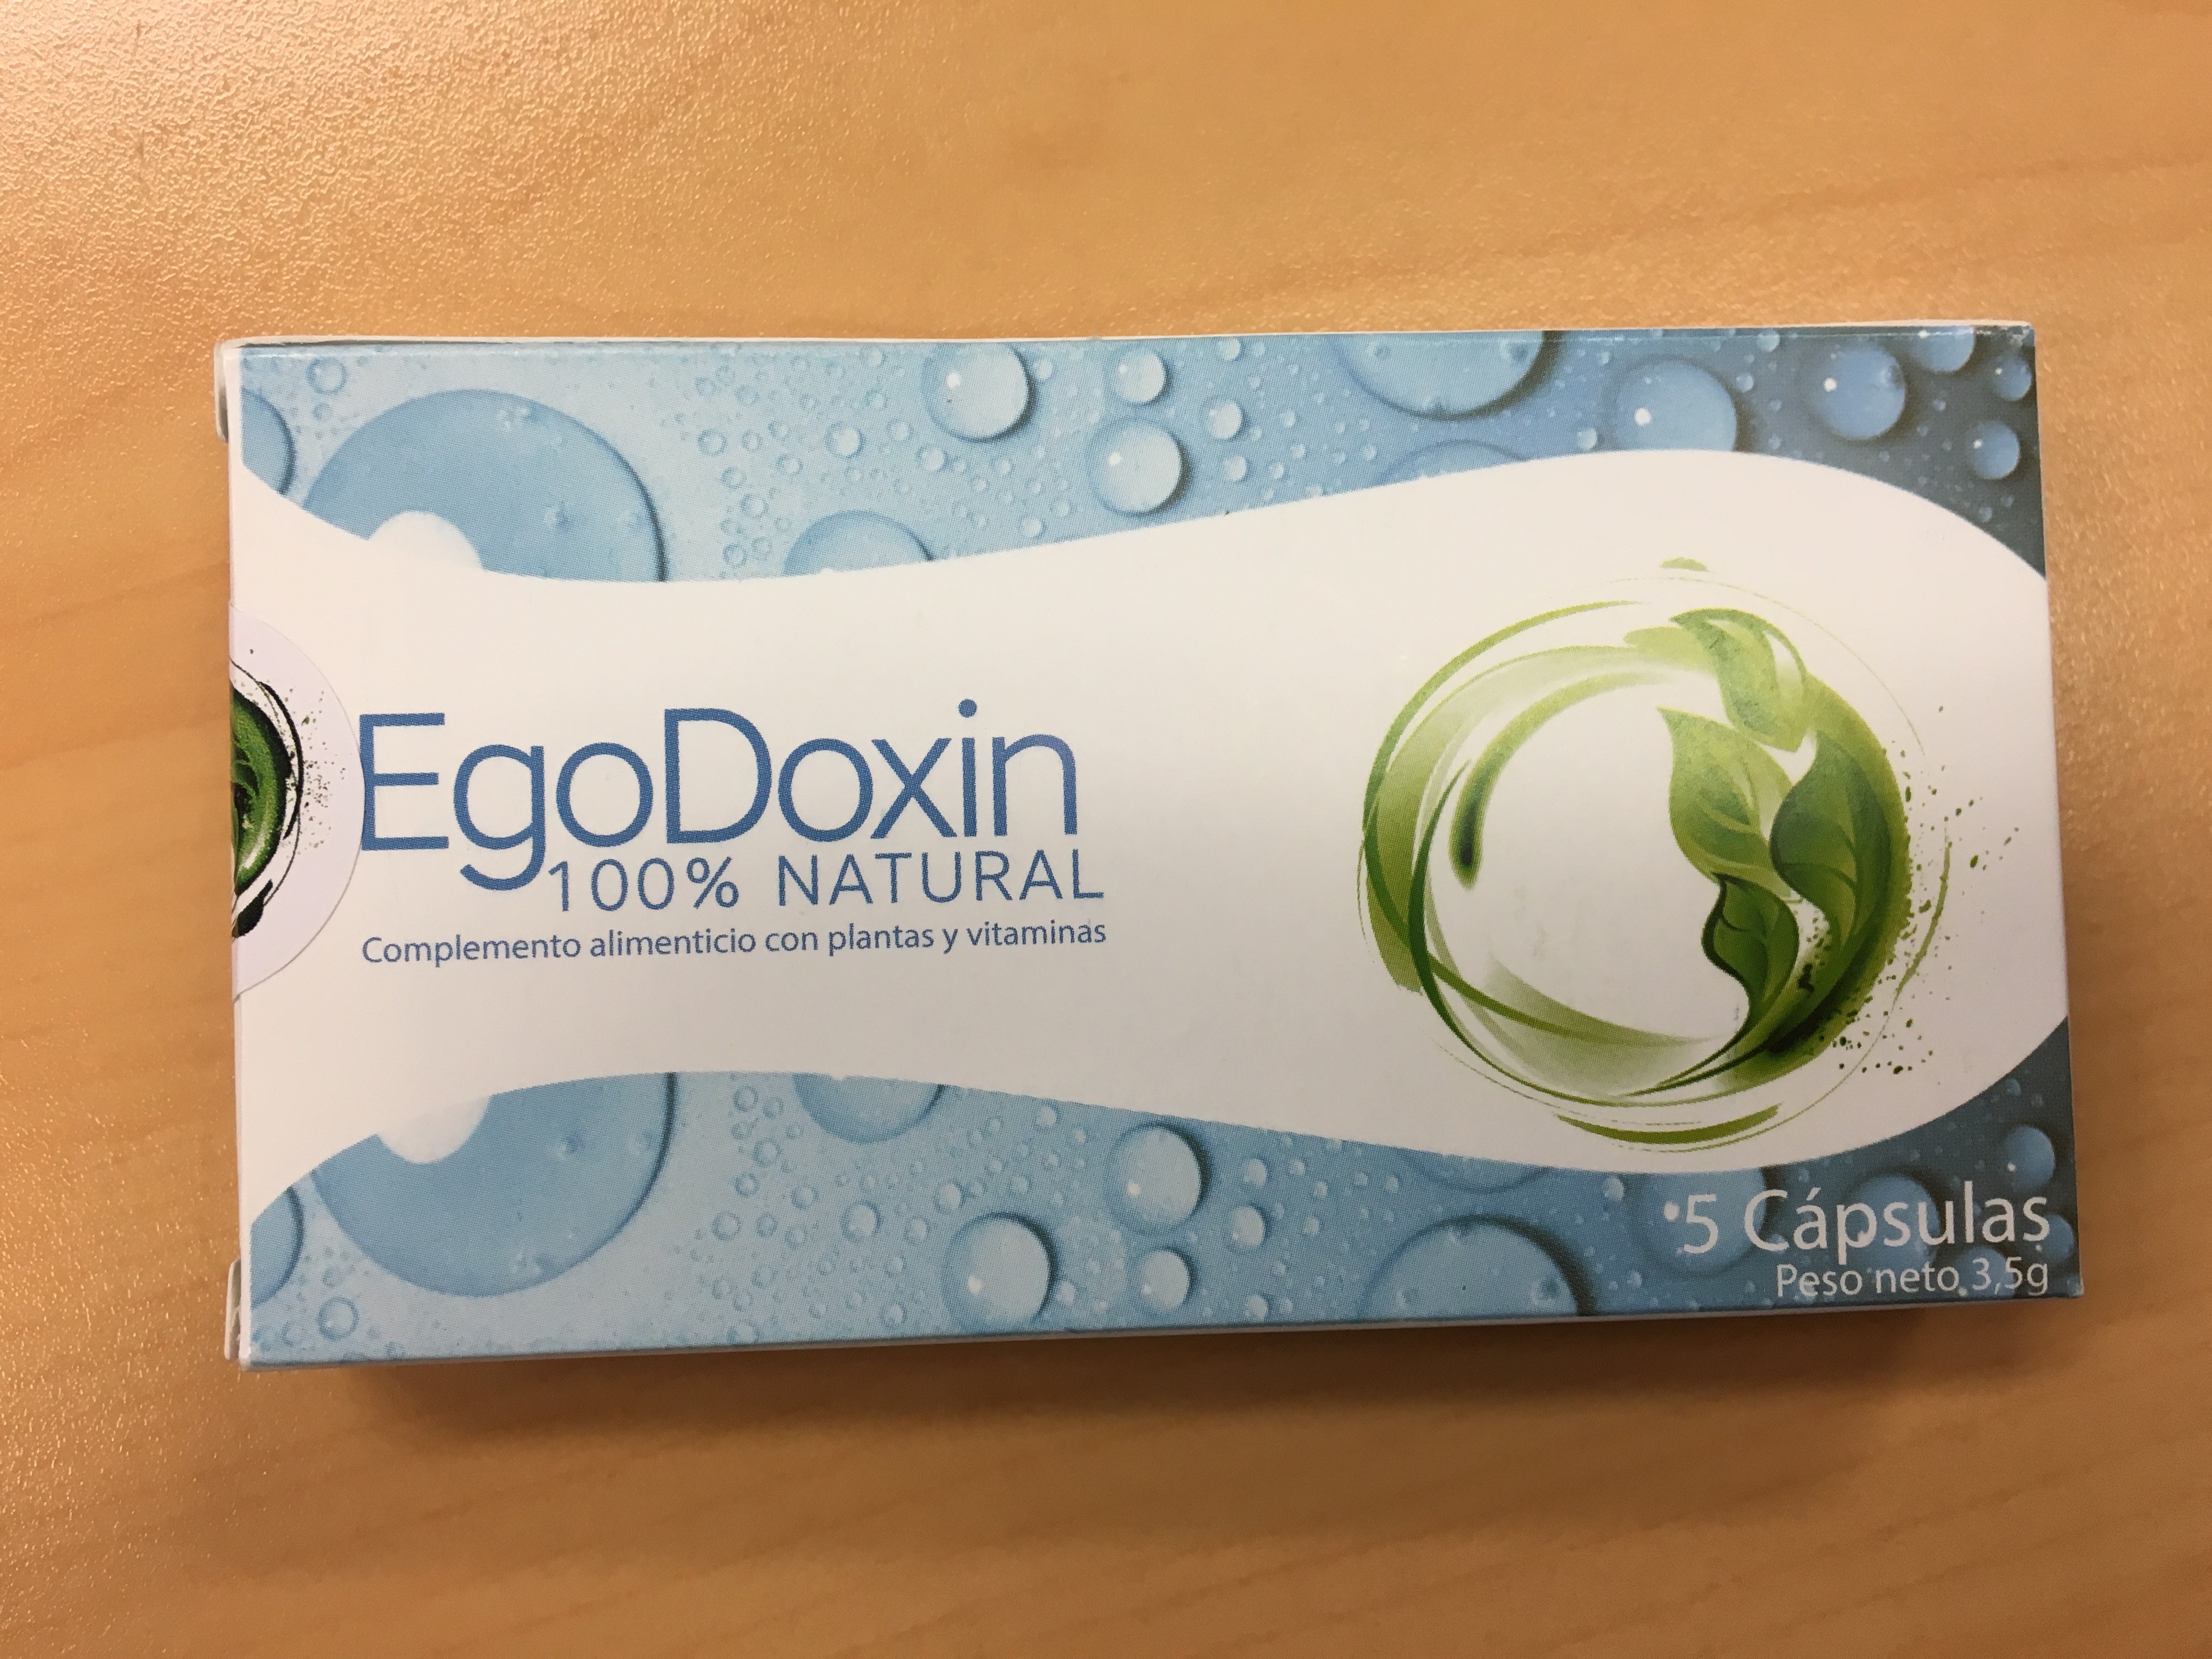 Image of the illigal product: Egodoxin